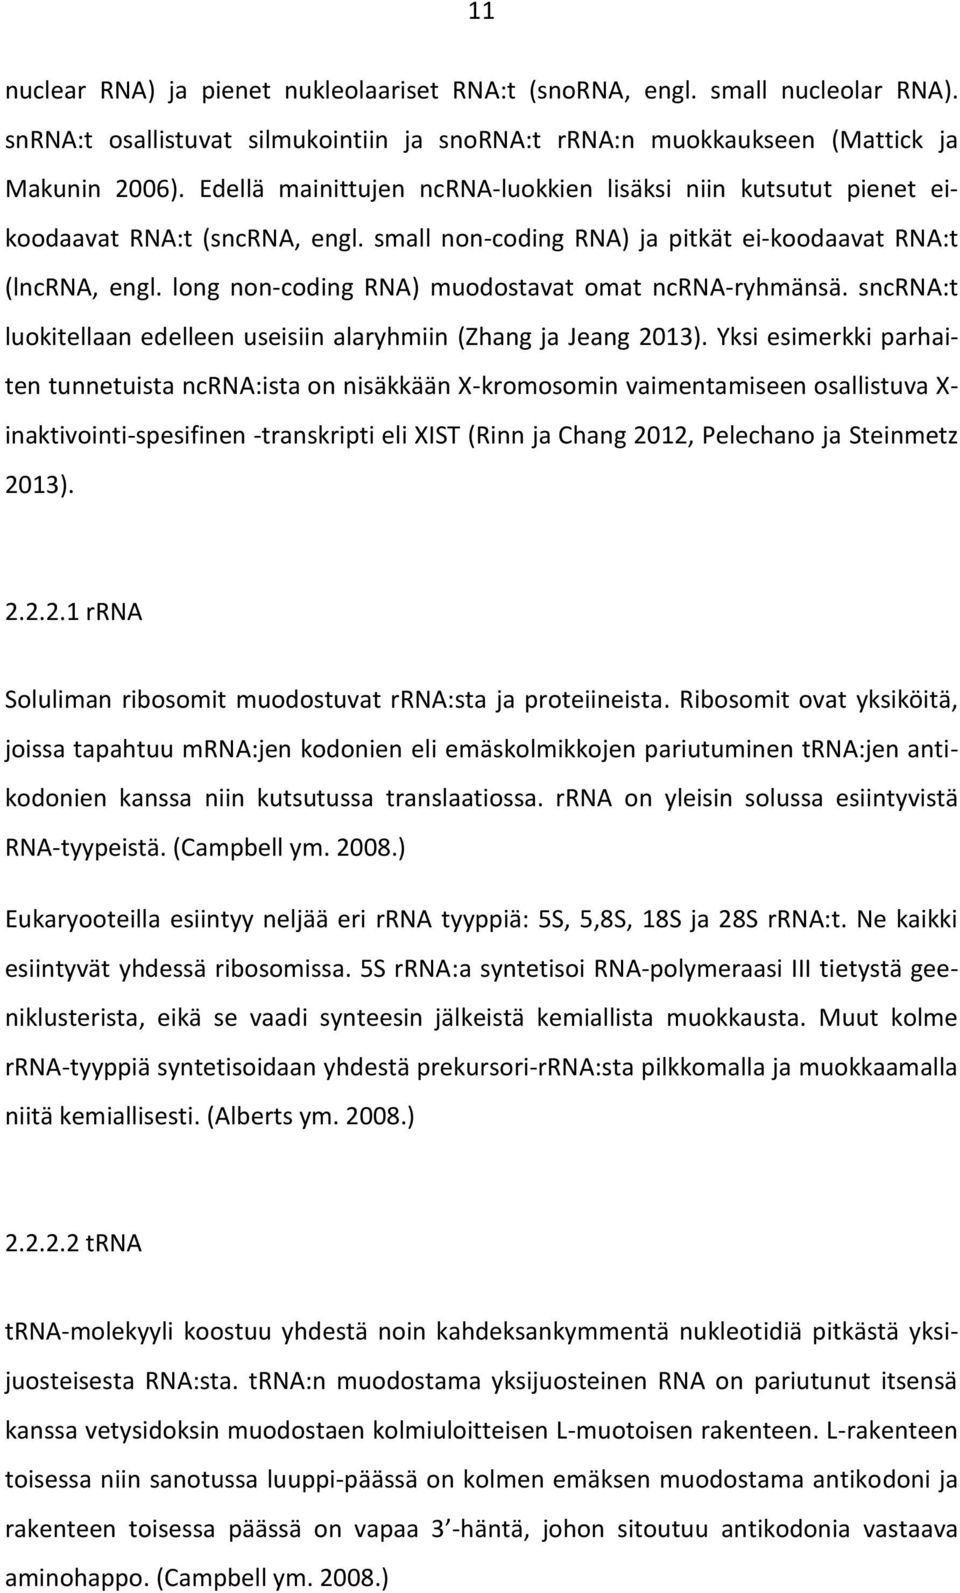 long non-coding RNA) muodostavat omat ncrna-ryhmänsä. sncrna:t luokitellaan edelleen useisiin alaryhmiin (Zhang ja Jeang 2013).